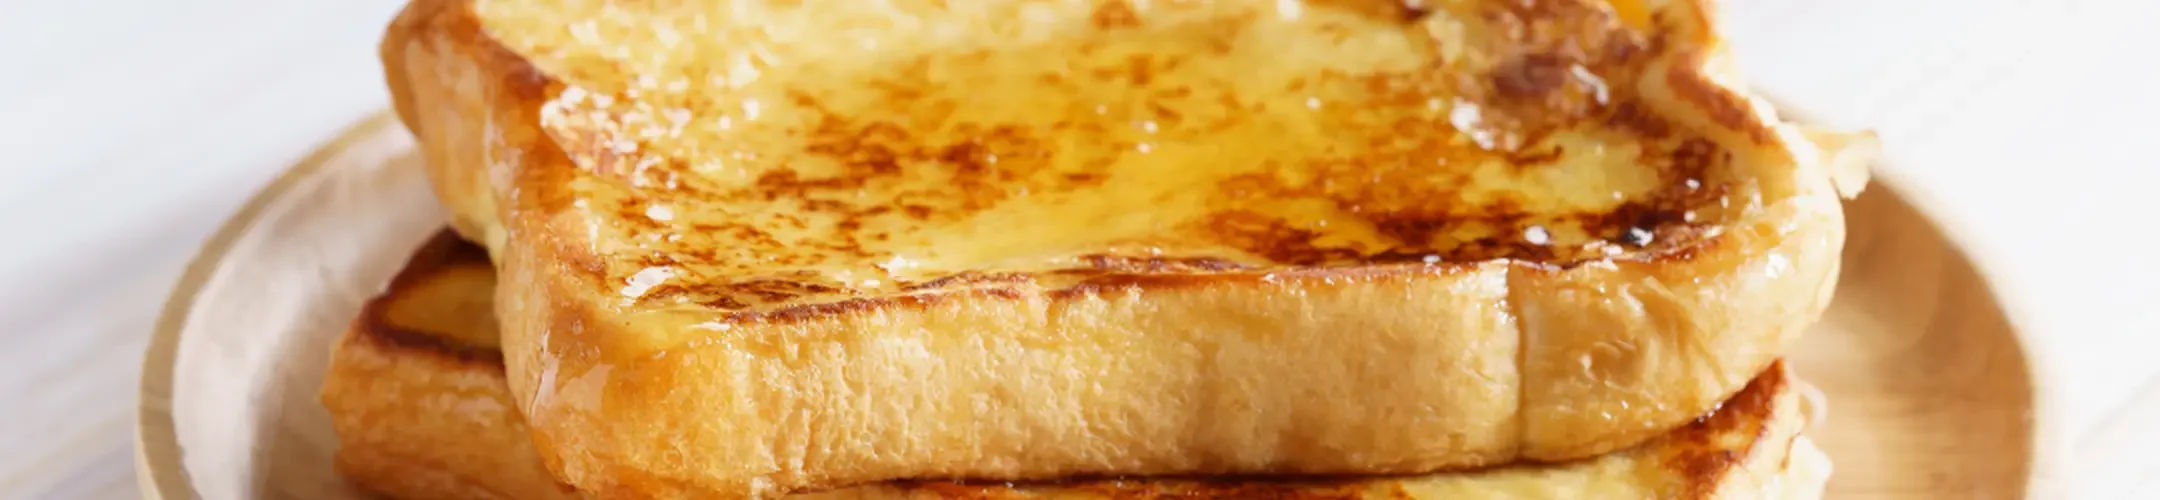 Toast mit geschmolzener Butter